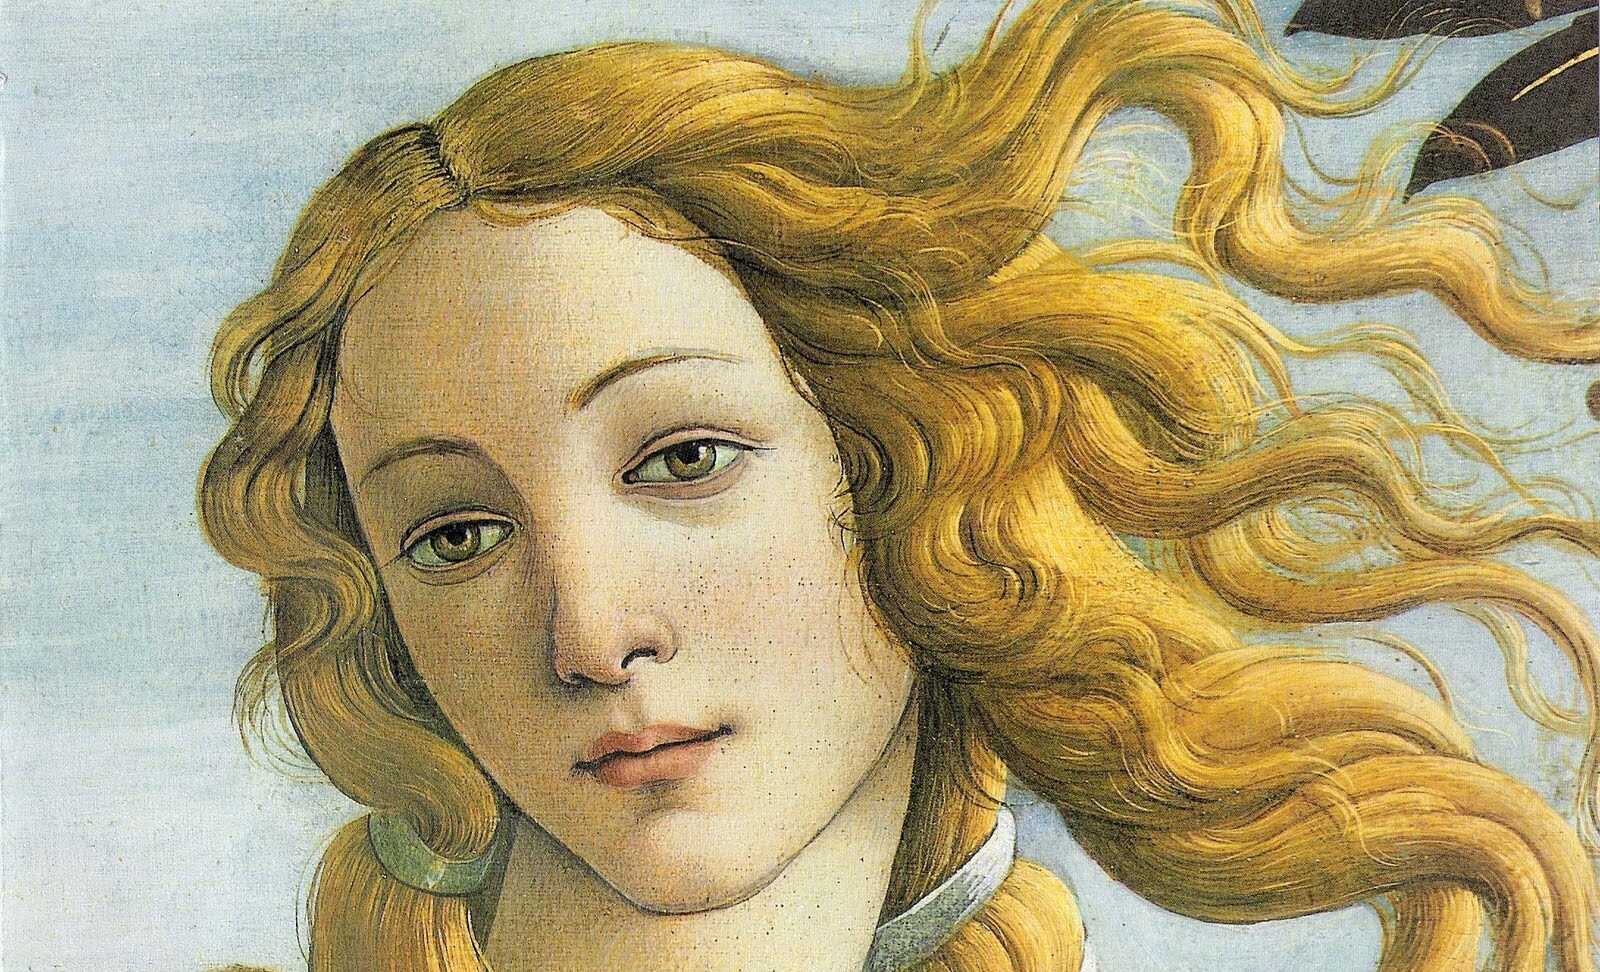 Simonetta Vespucci, la Vénus de Botticelli - Cultea